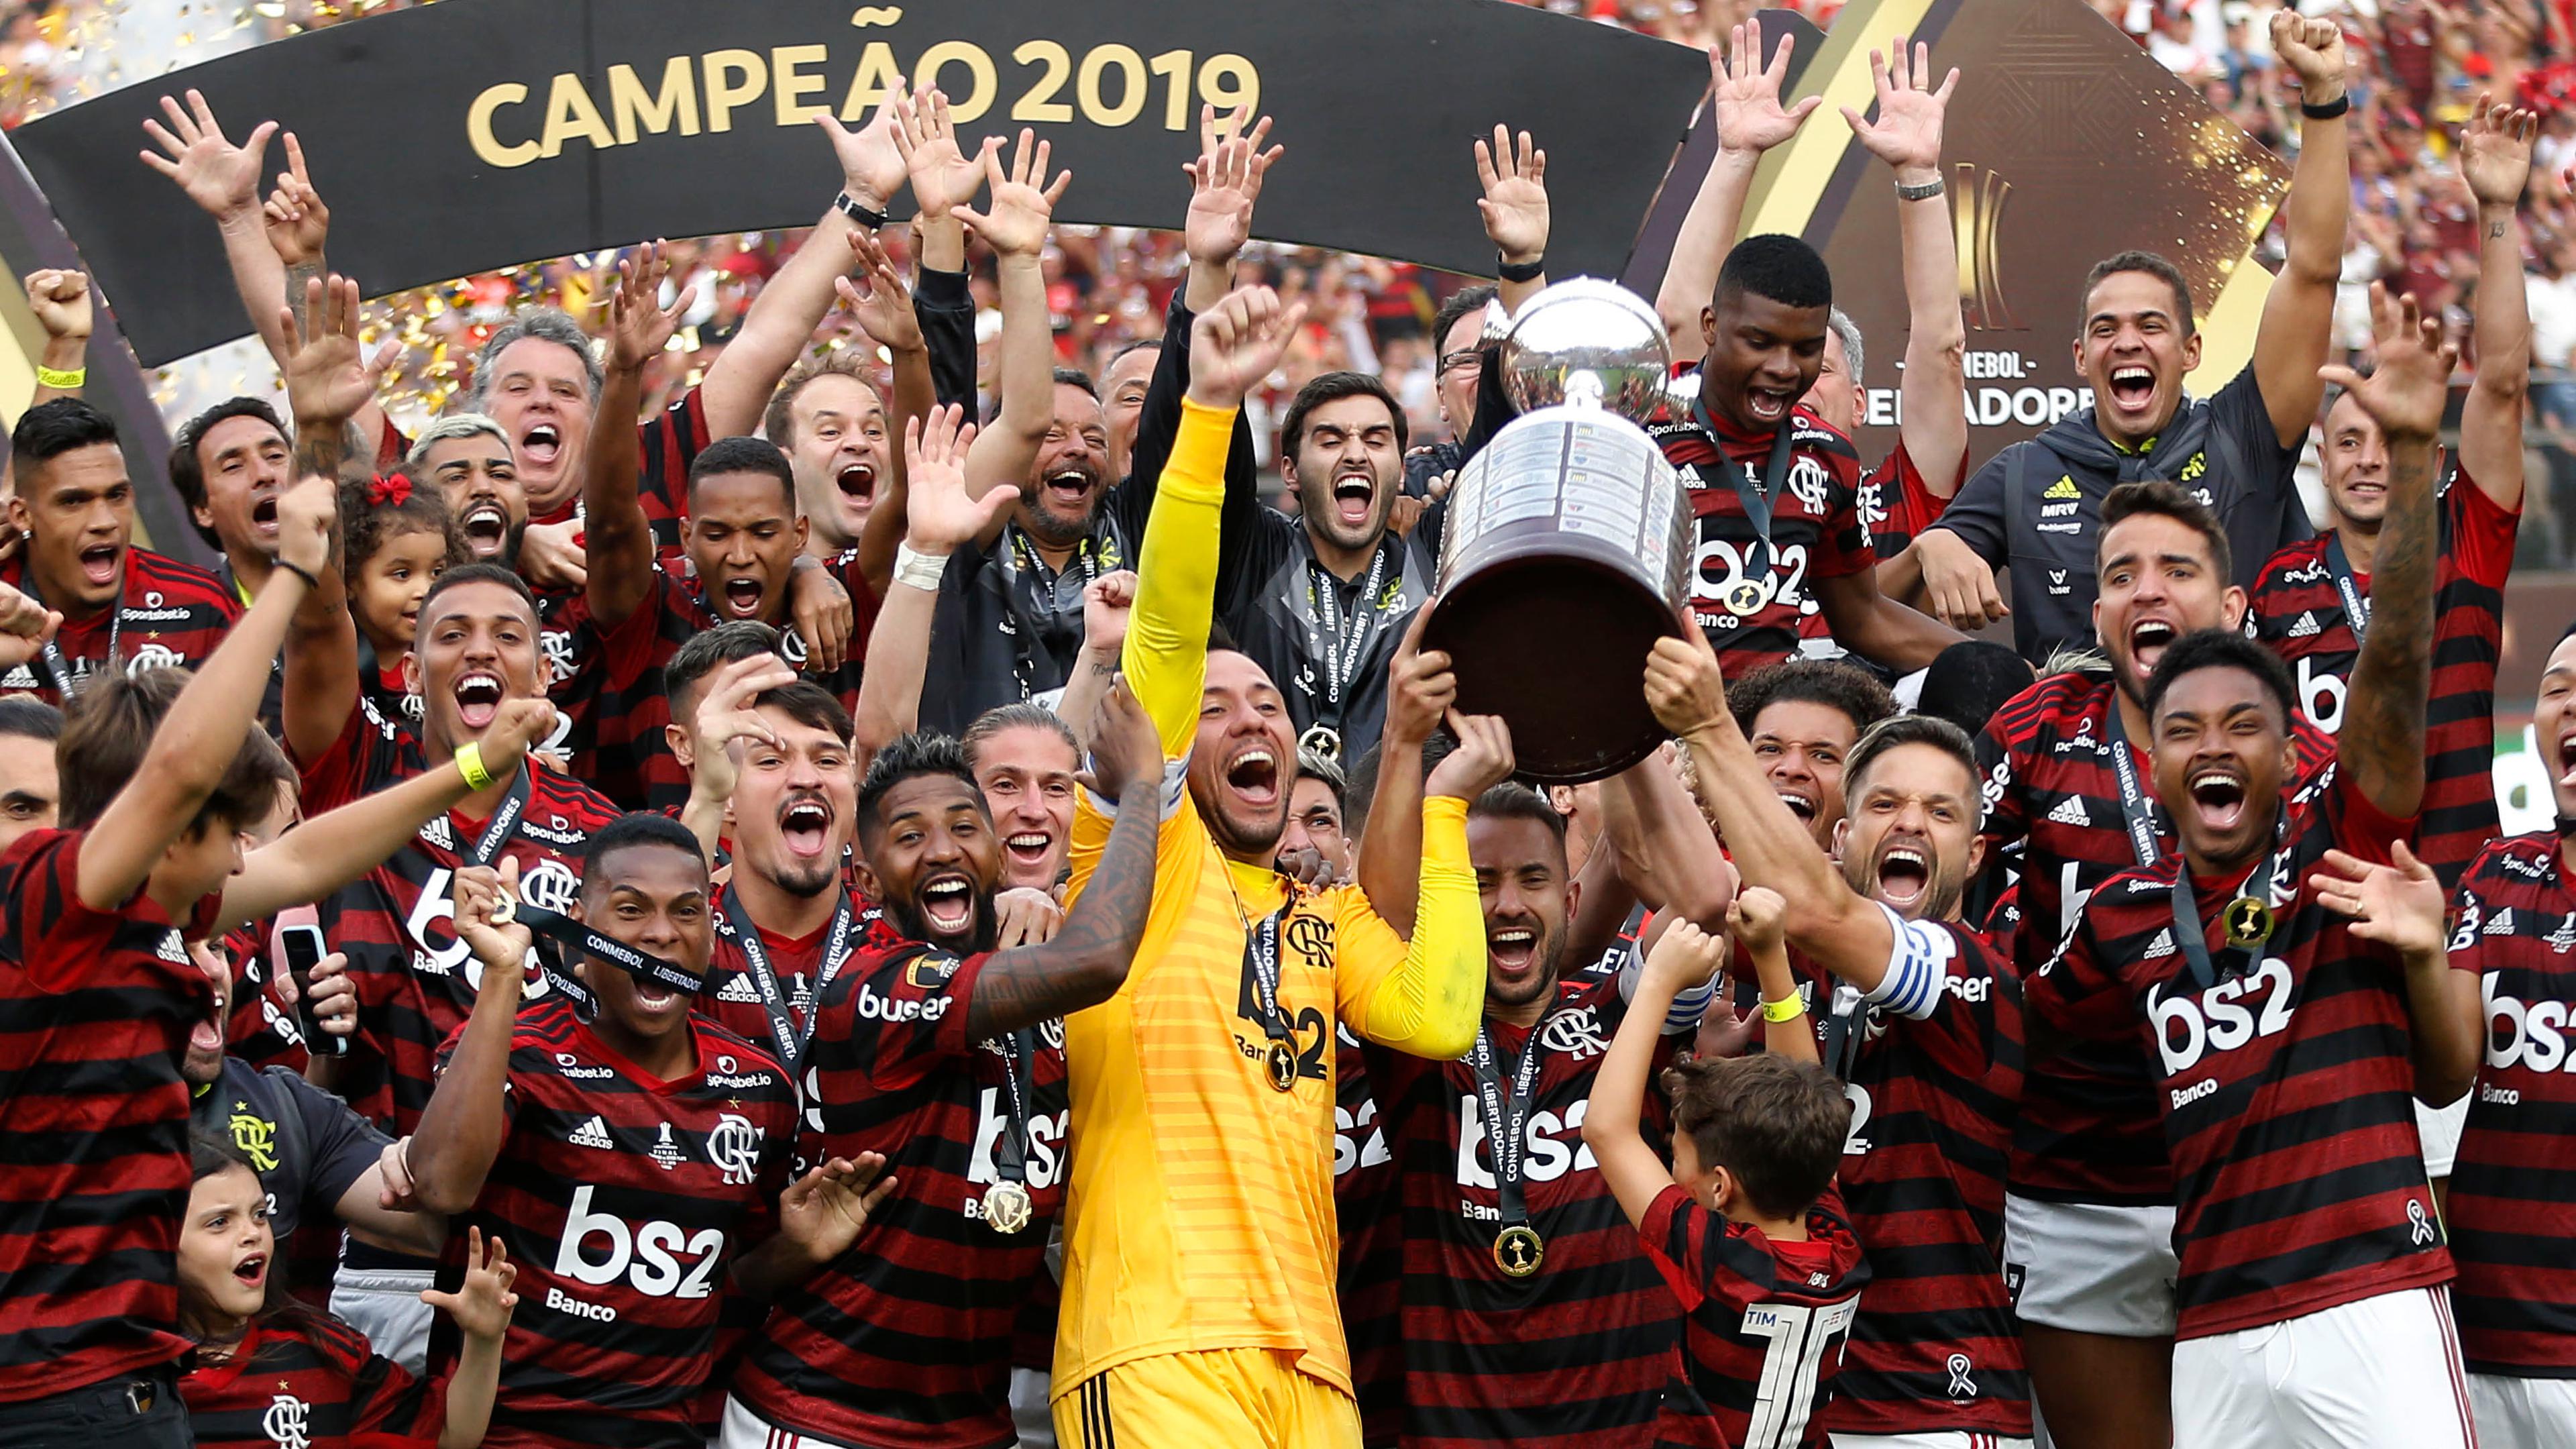 Titular do Flamengo tem reviravolta incrível na carreira